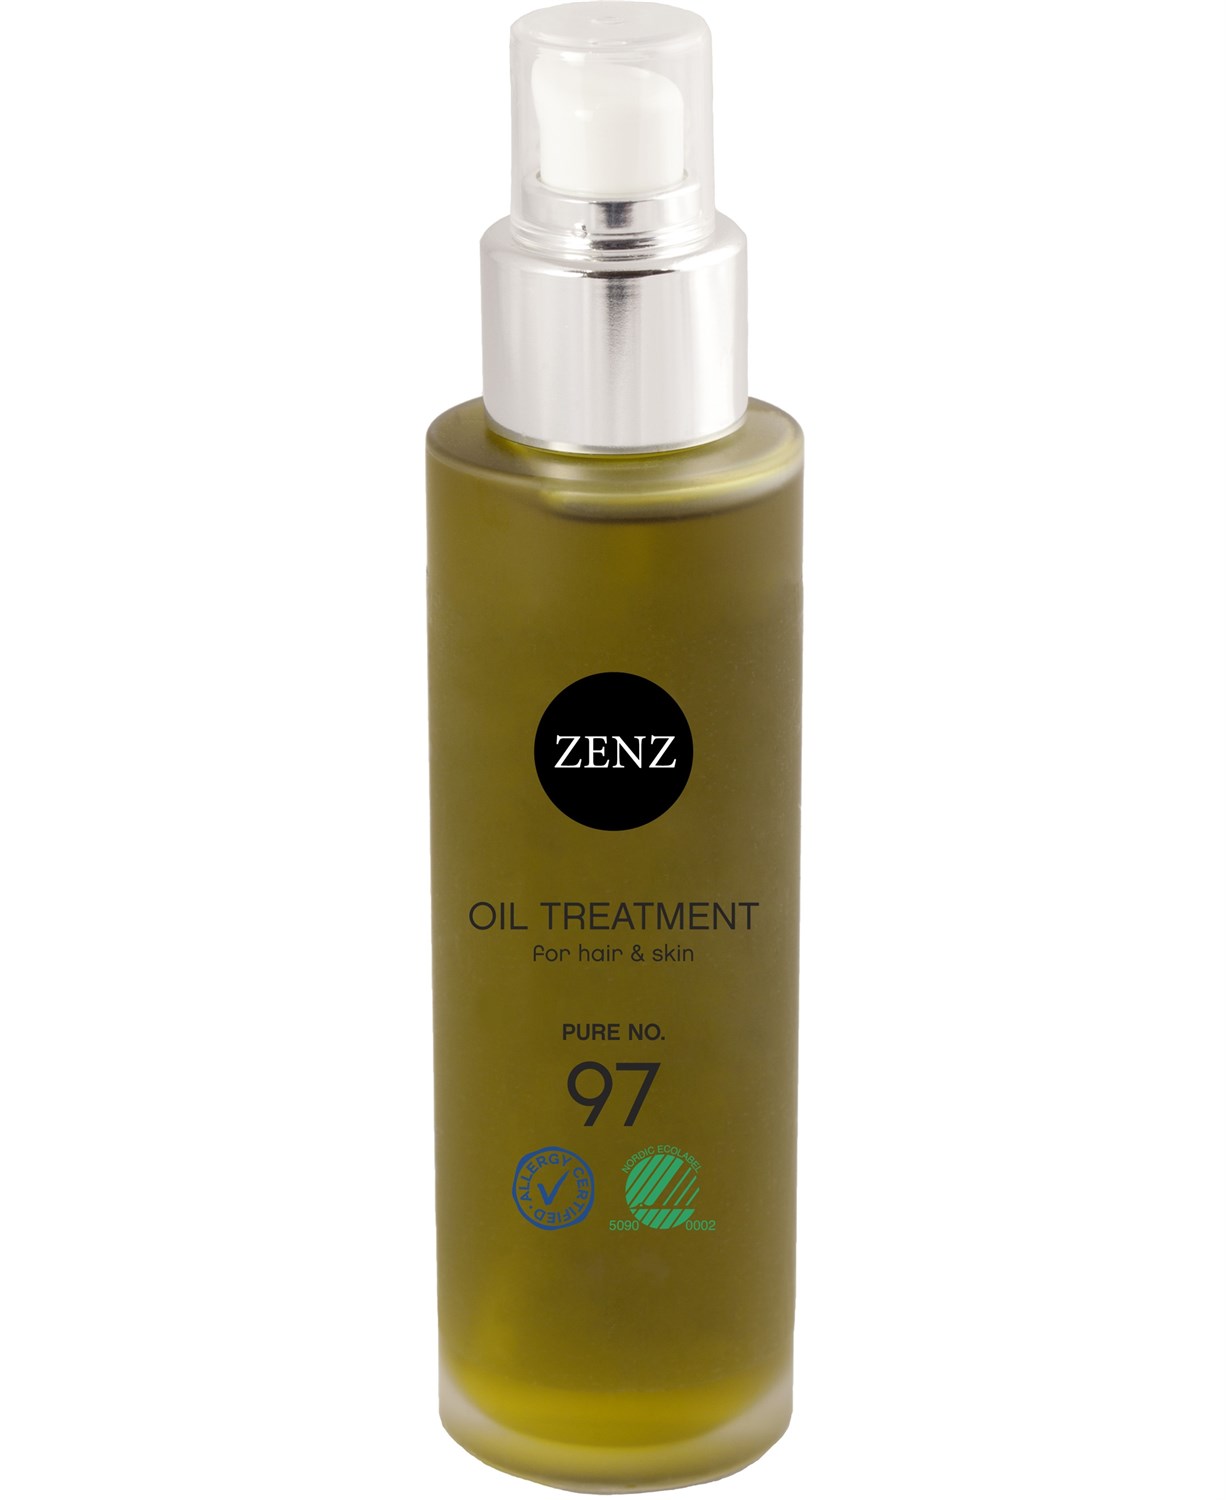 Zenz Organic oil treatment pure no. 97